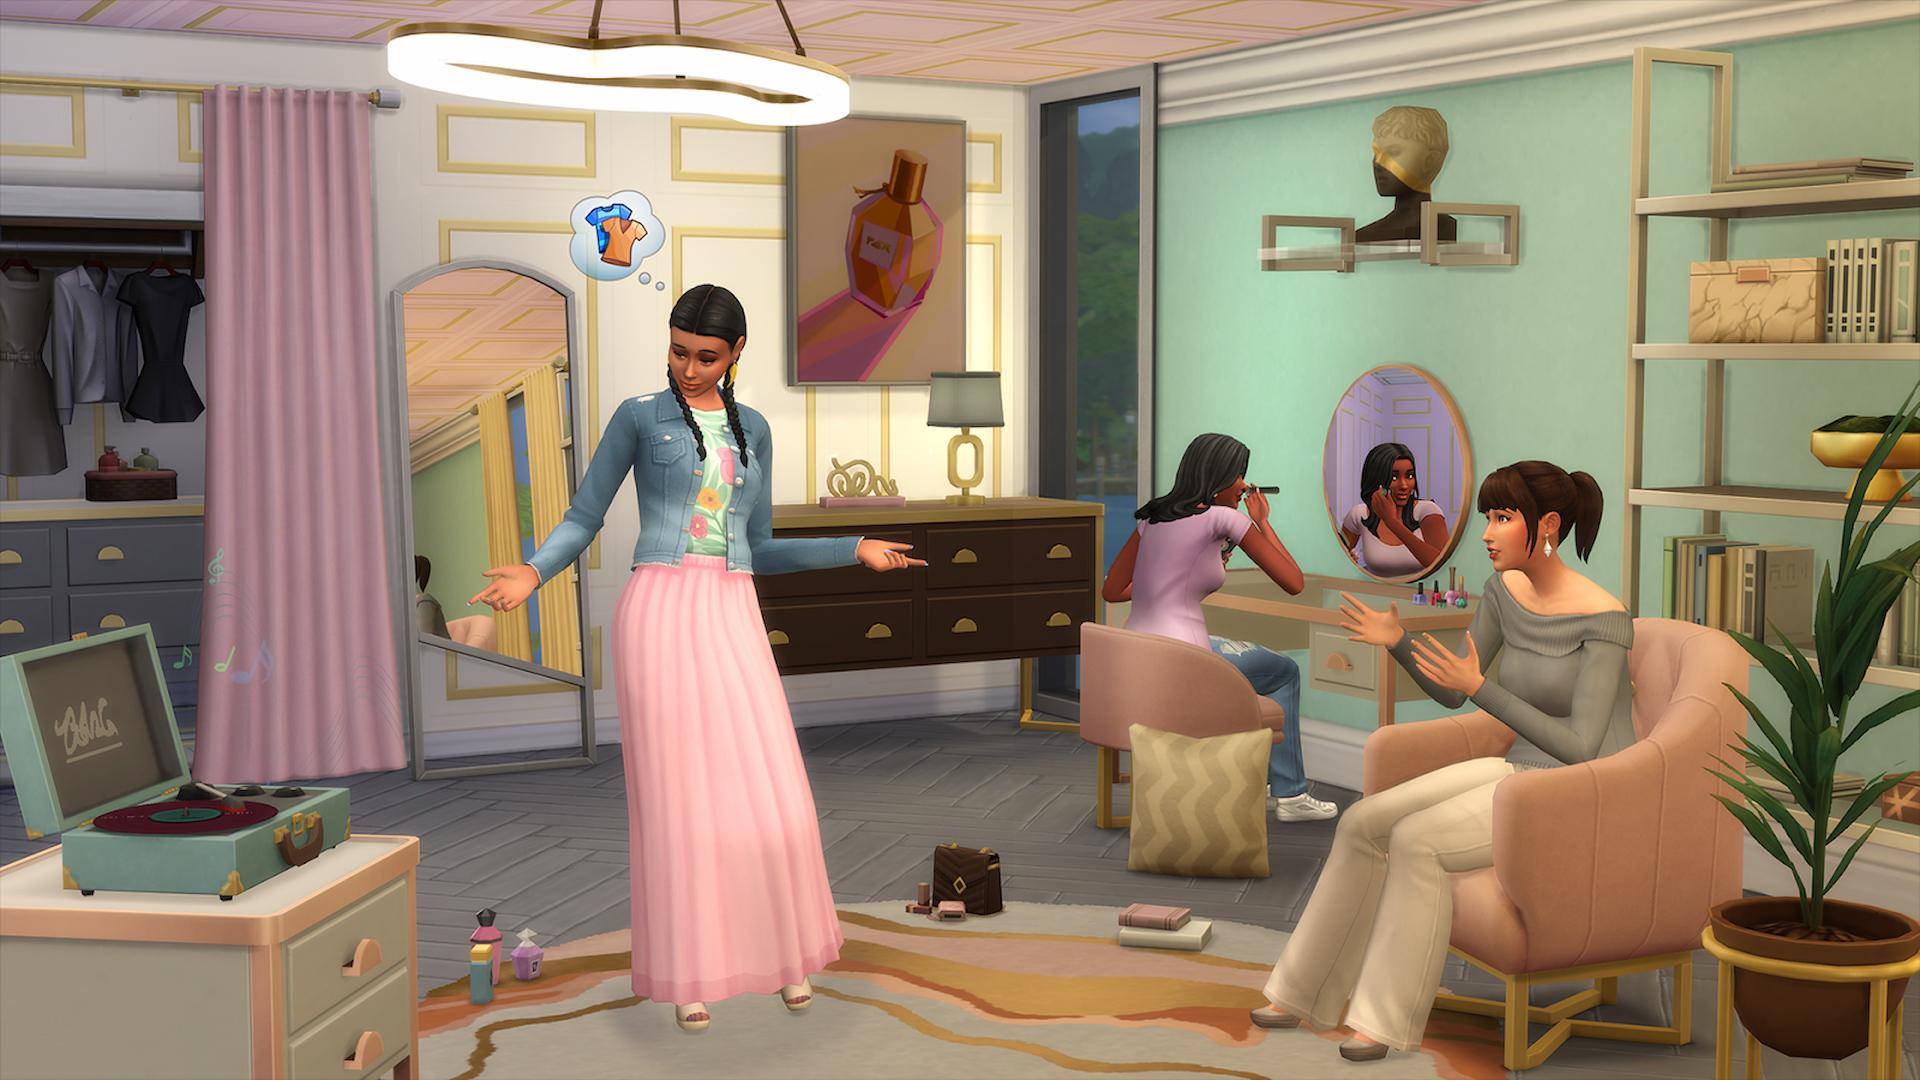 Screenshot von Sims 4 Modern Luxe Kit, der Sims in einer Boutique zeigt, wie sie Kleidung anprobieren und sich schminken